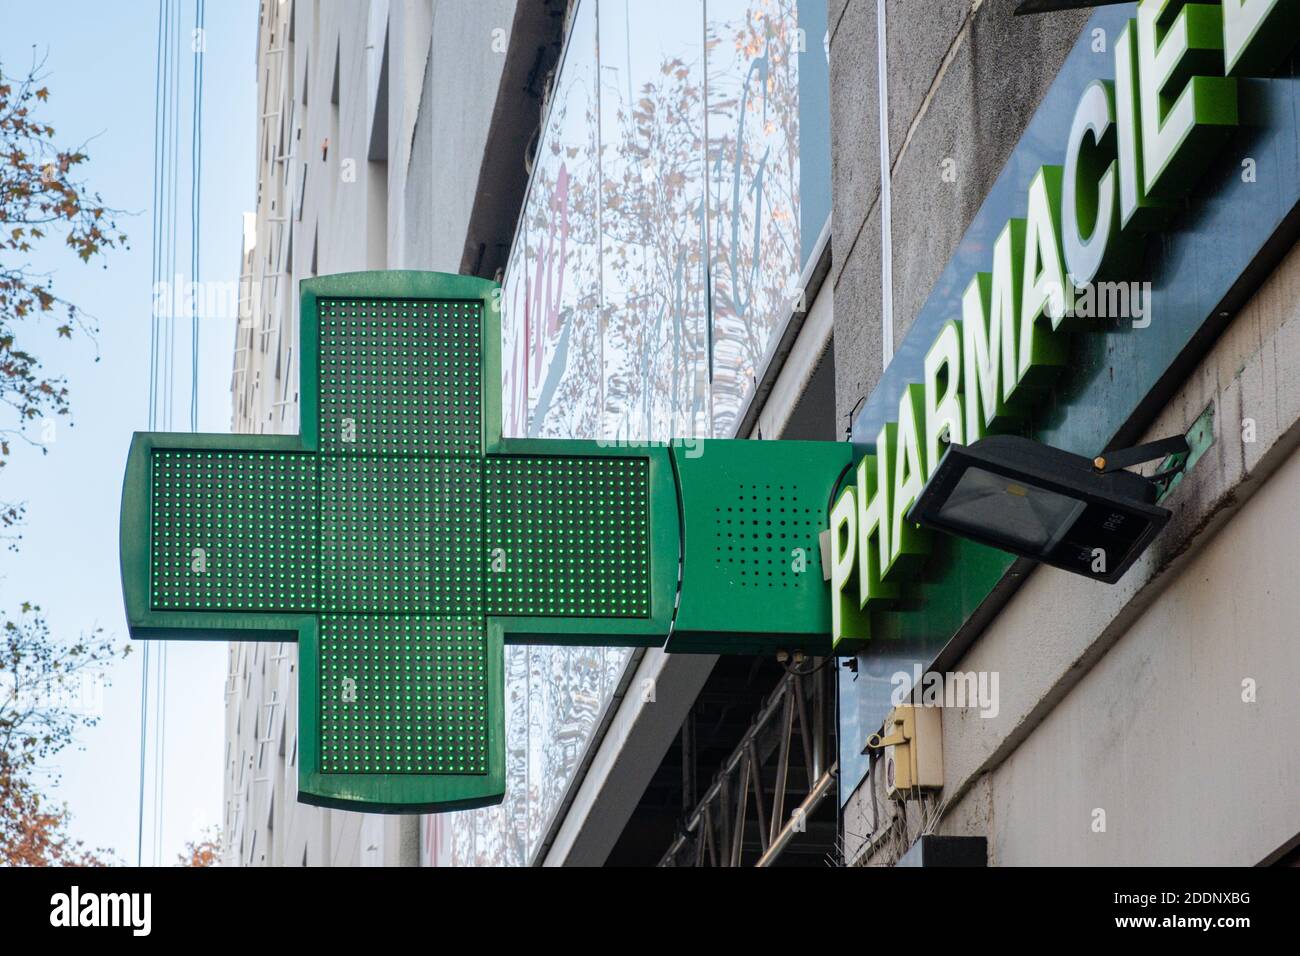 Lyon (Frankreich), 24. November 2020. Grünes Kreuz aus einer Apotheke. Dieses Symbol wird auch griechisches Kreuz genannt. Stockfoto